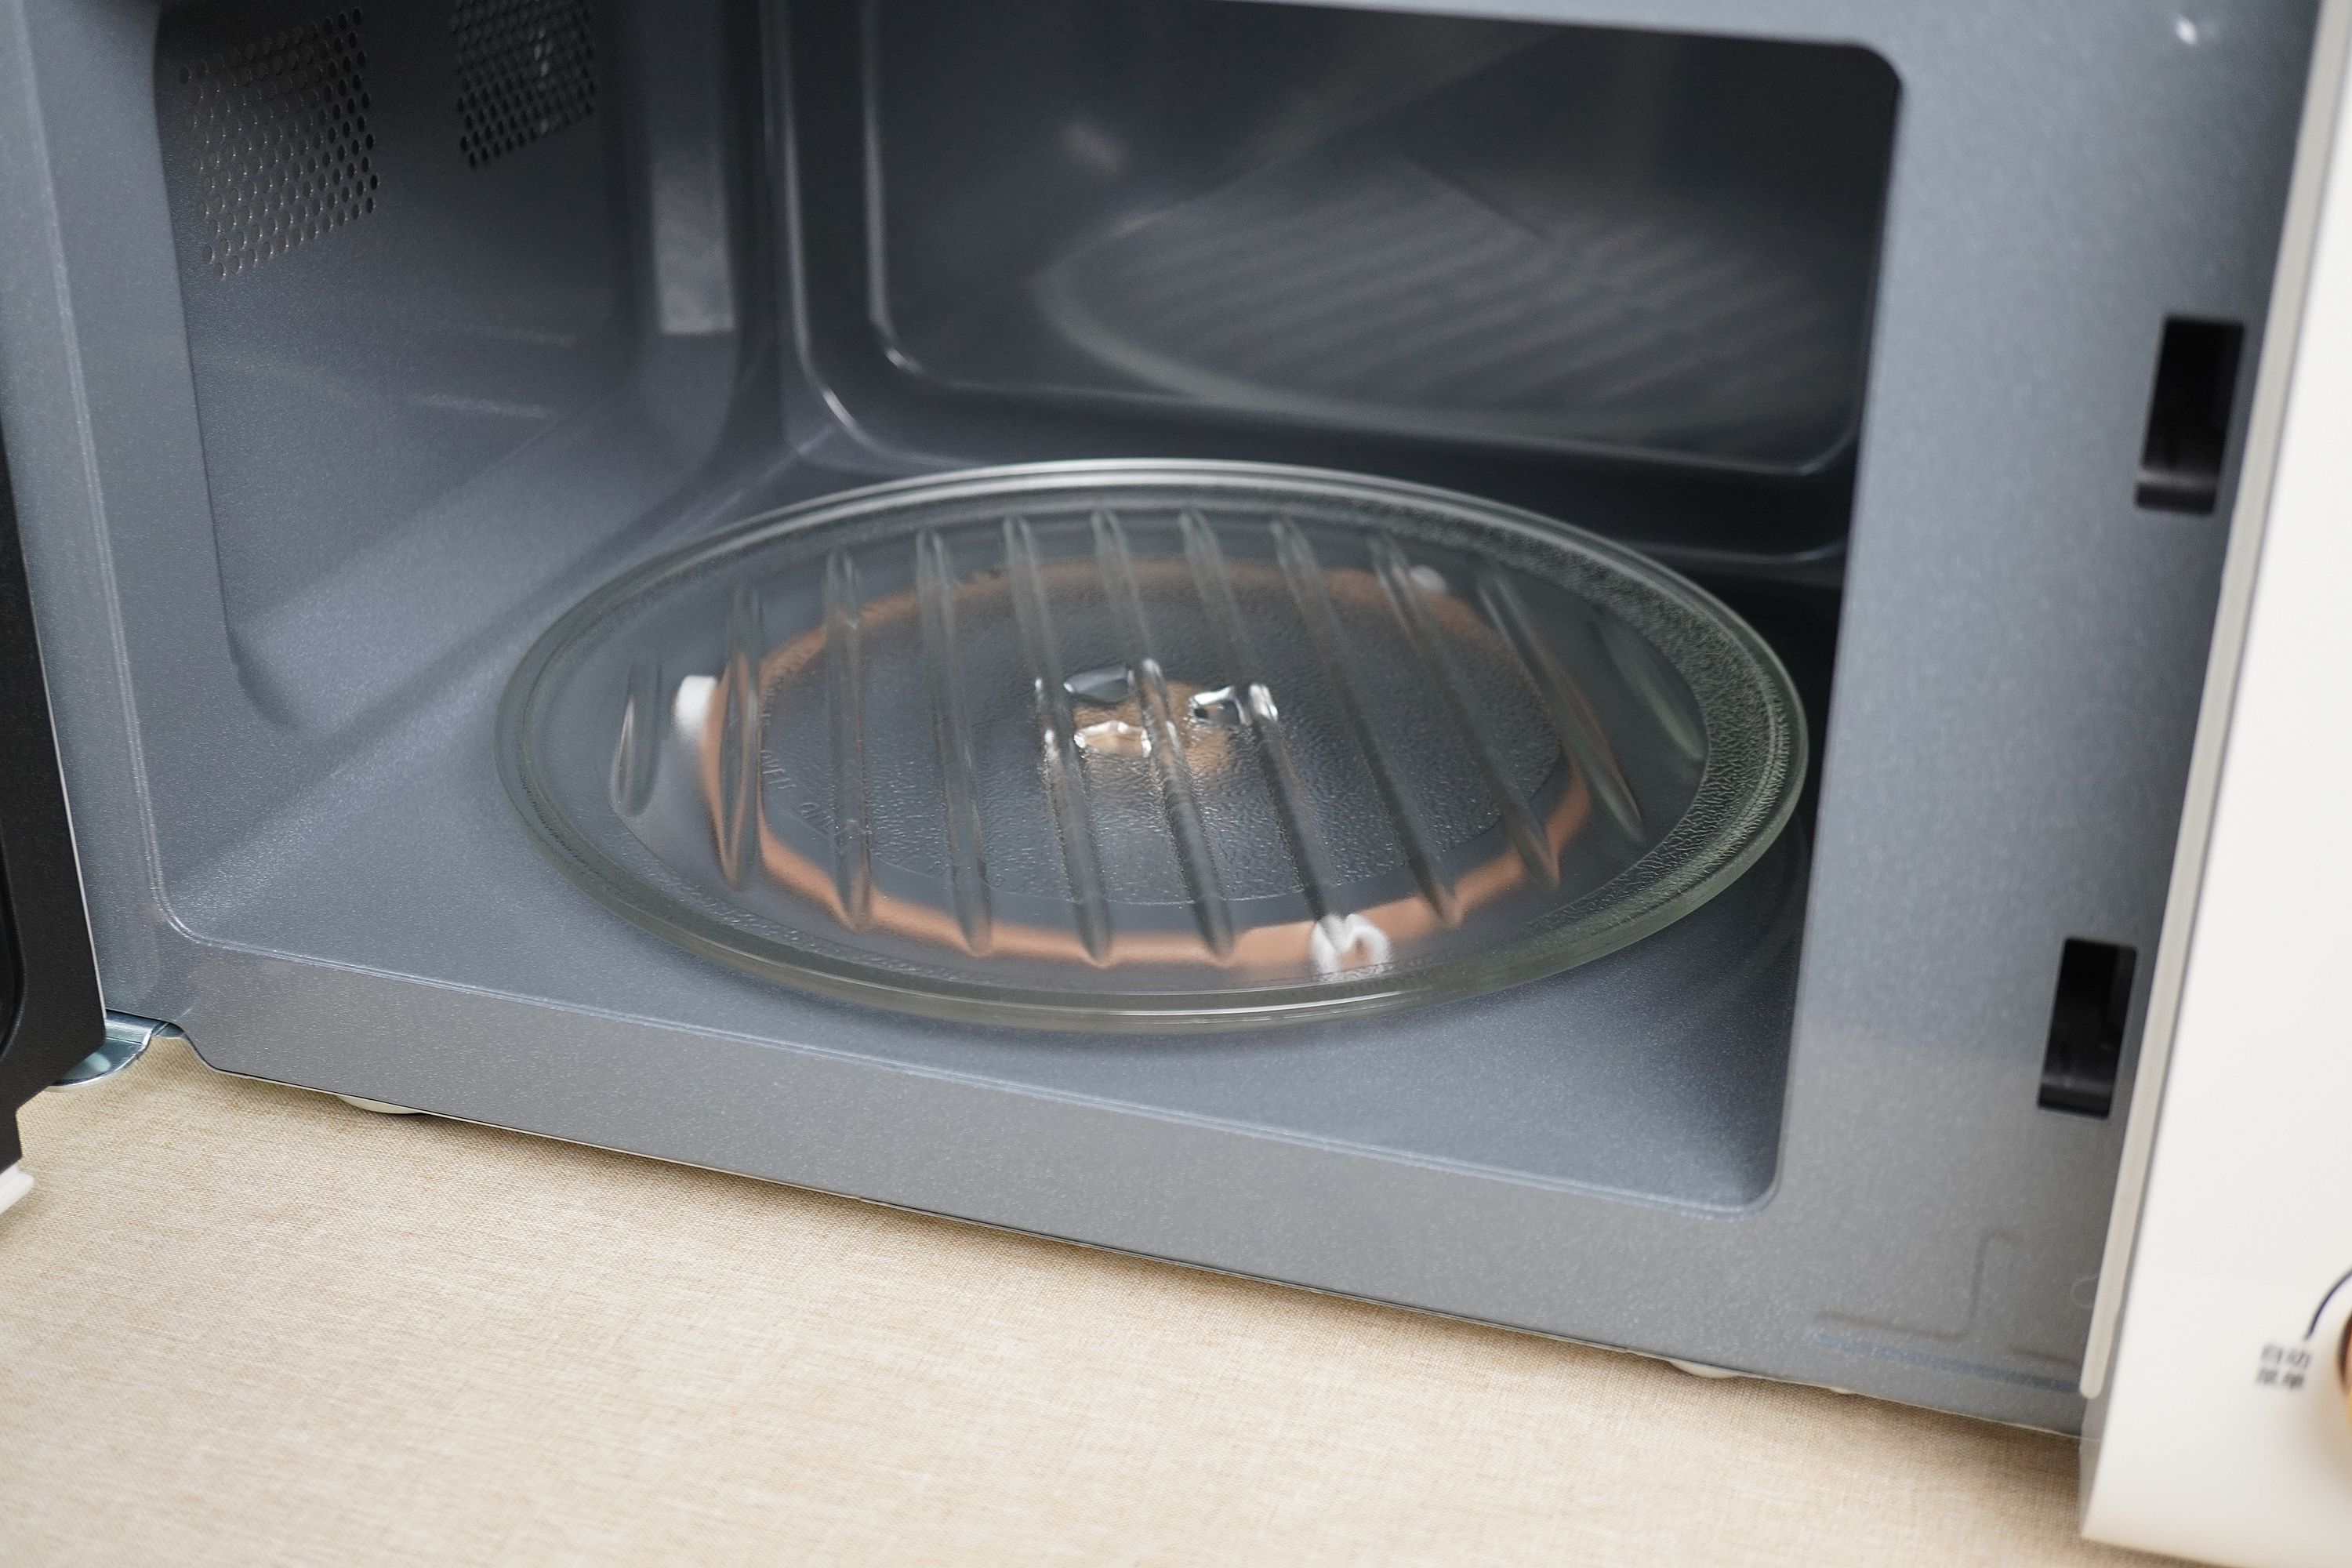 除了用来热菜热饭，现在的微波炉还能做这么多你知道吗？